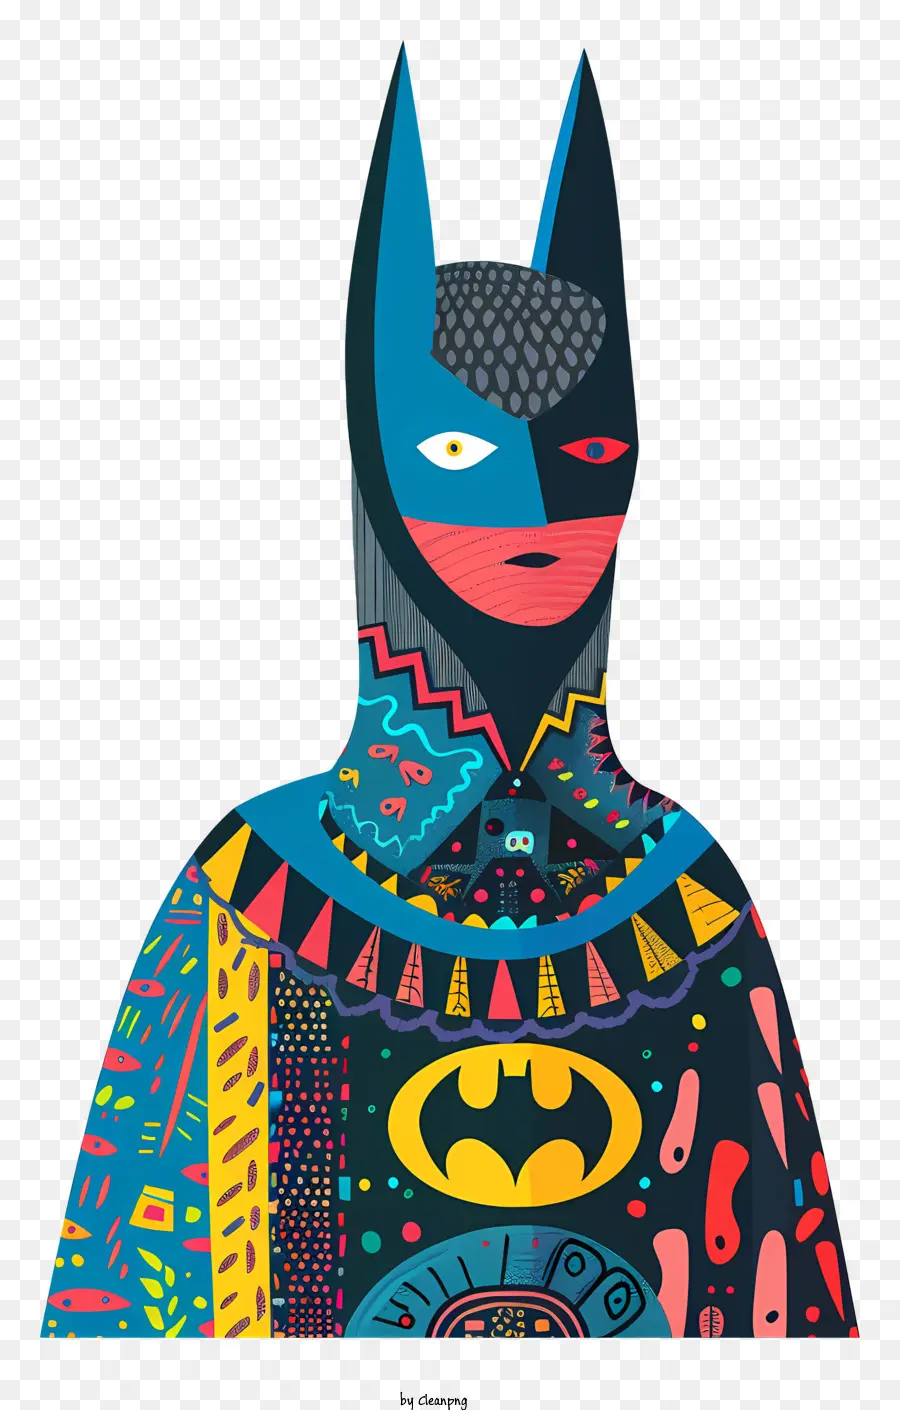 Batman - Frau im Batman -Kostüm mit geometrischen Mustern